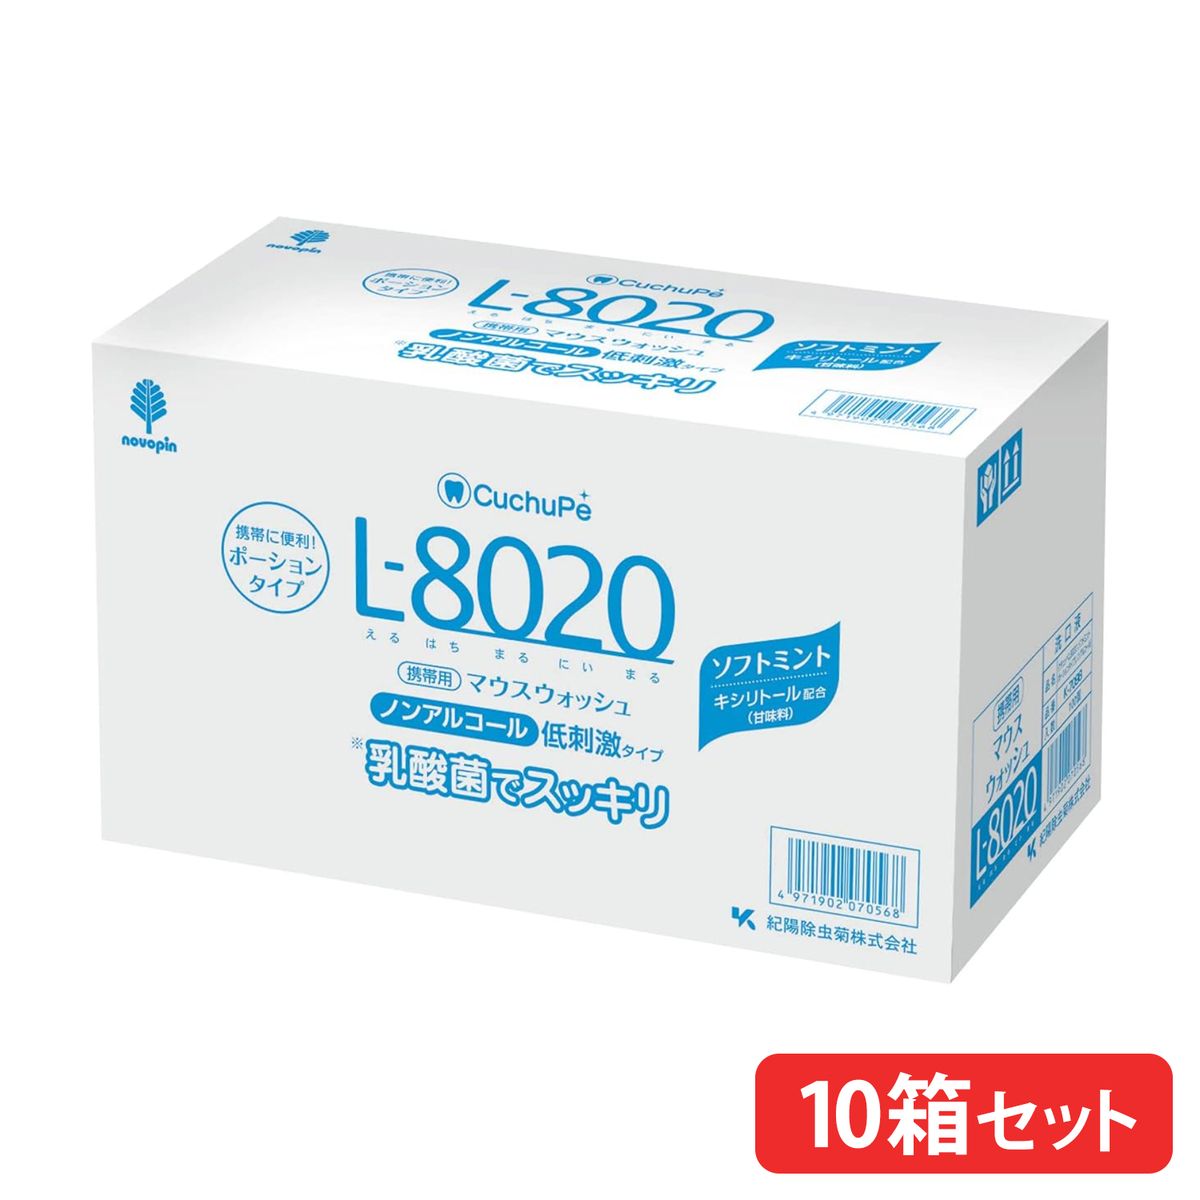 【10箱まとめ買い】マウスウォッシュ クチュッペL-8020 ソフトミント ポーションタイプ100個入 ノンアルコール